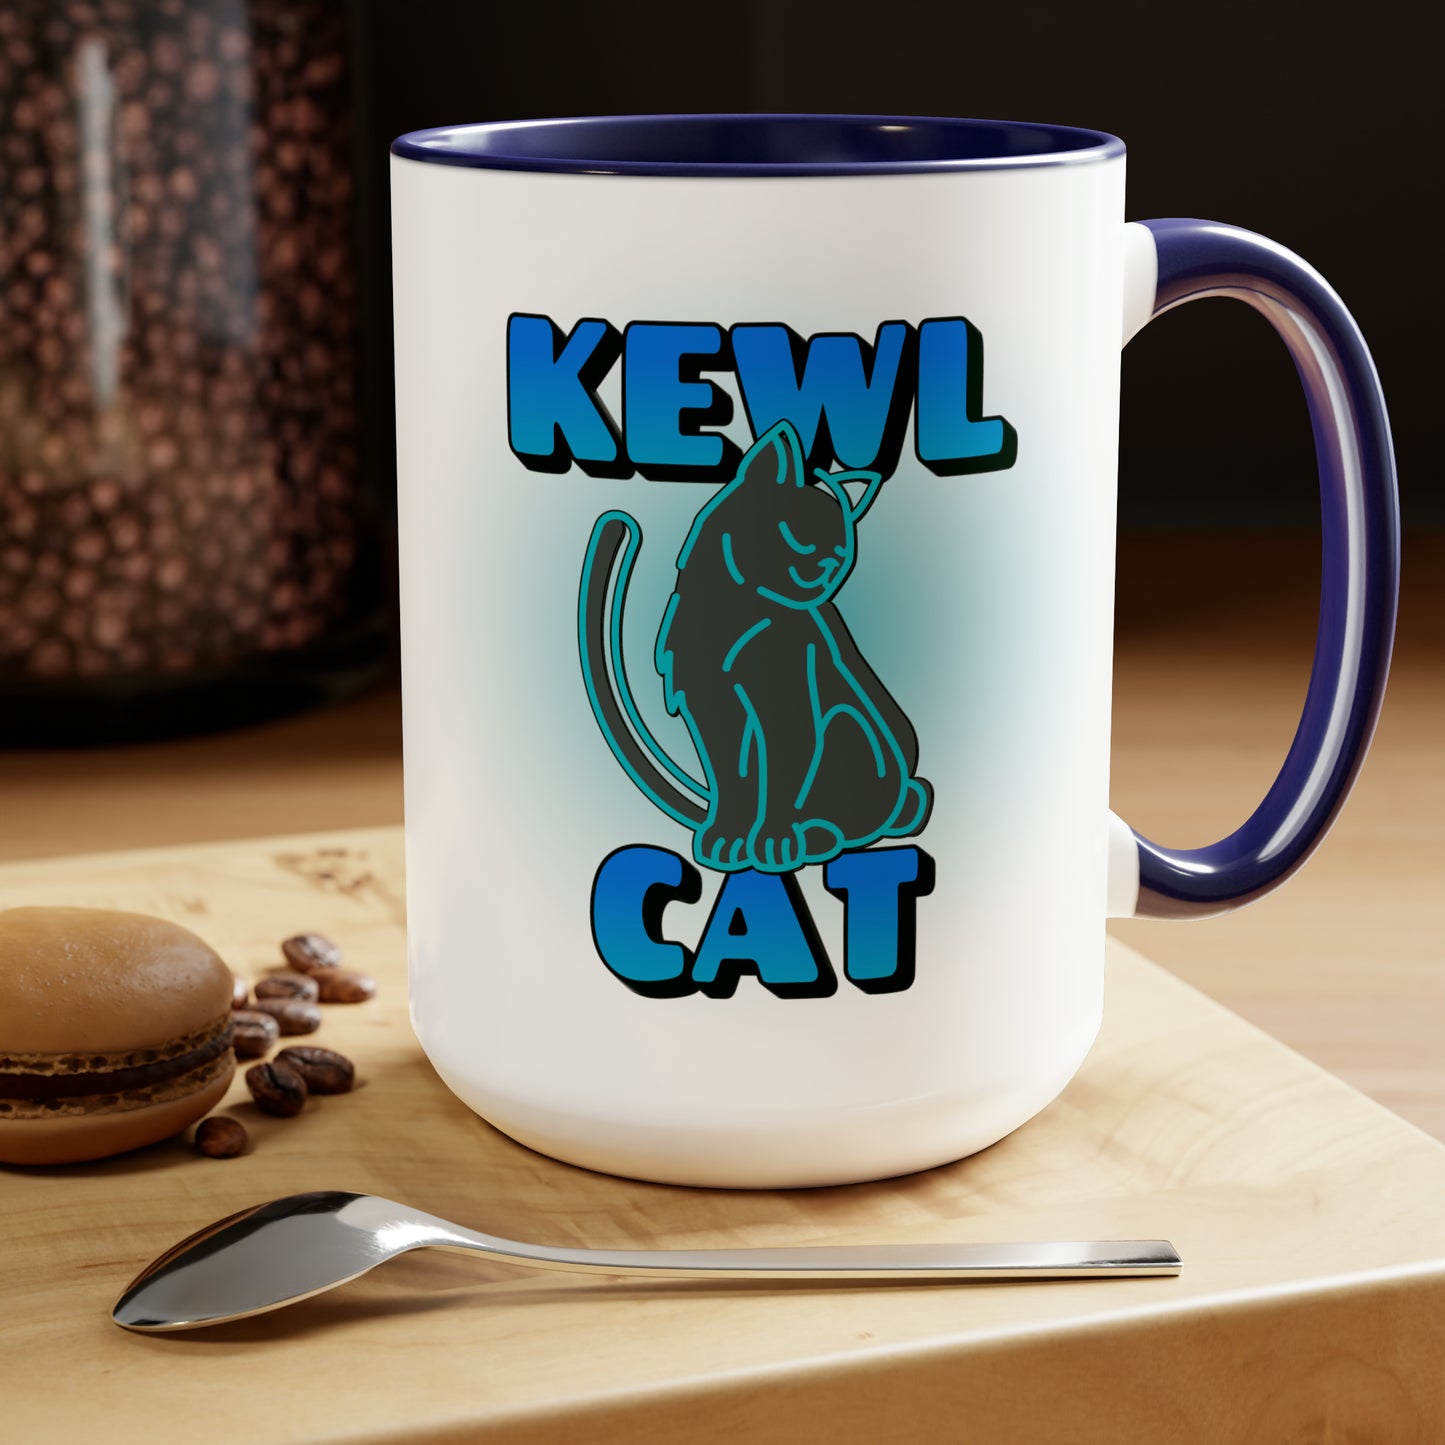 KEWL CAT Mug, 15oz